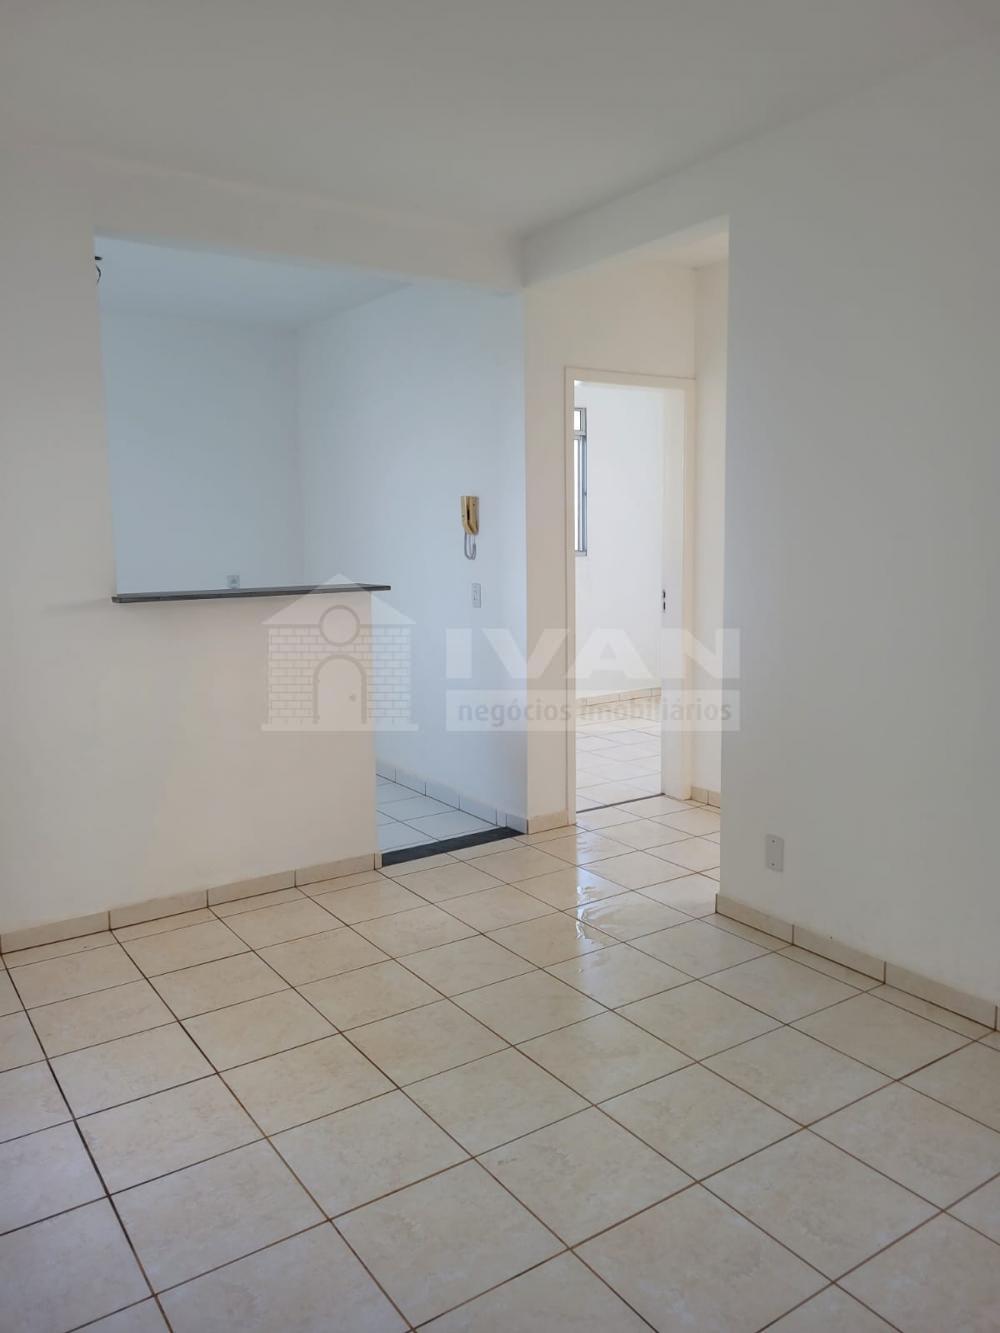 Comprar Apartamento / Padrão em Uberlândia R$ 115.000,00 - Foto 1